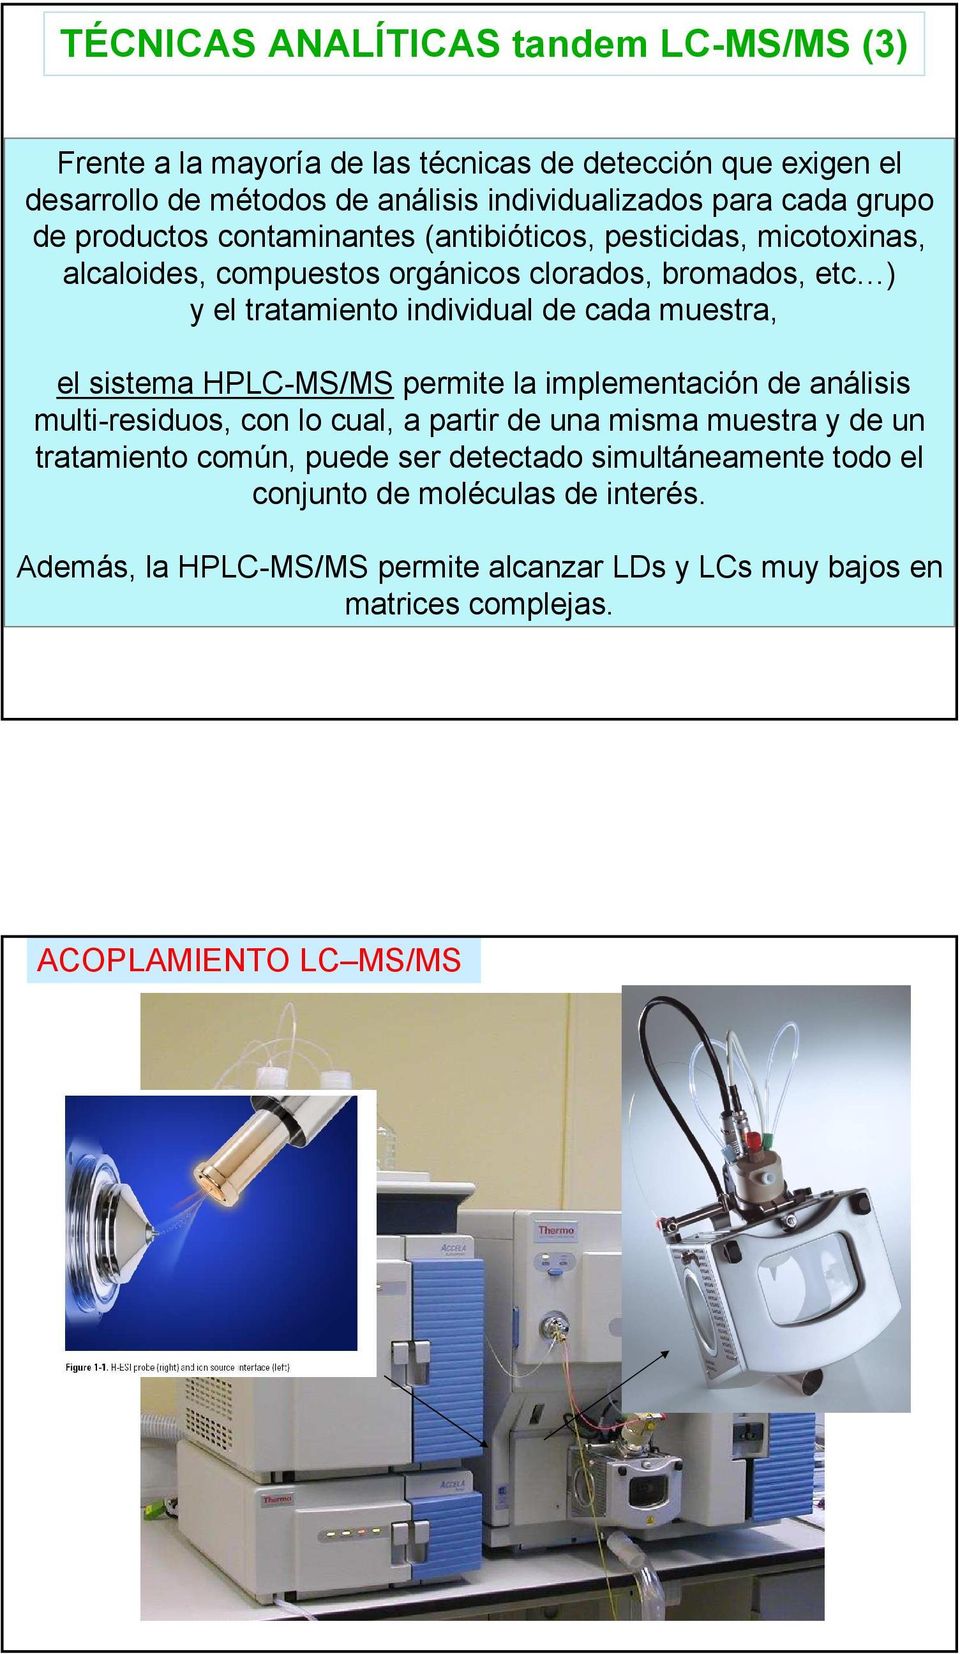 cada muestra, el sistema HPLC-MS/MS permite la implementación de análisis multi-residuos, con lo cual, a partir de una misma muestra y de un tratamiento común, puede